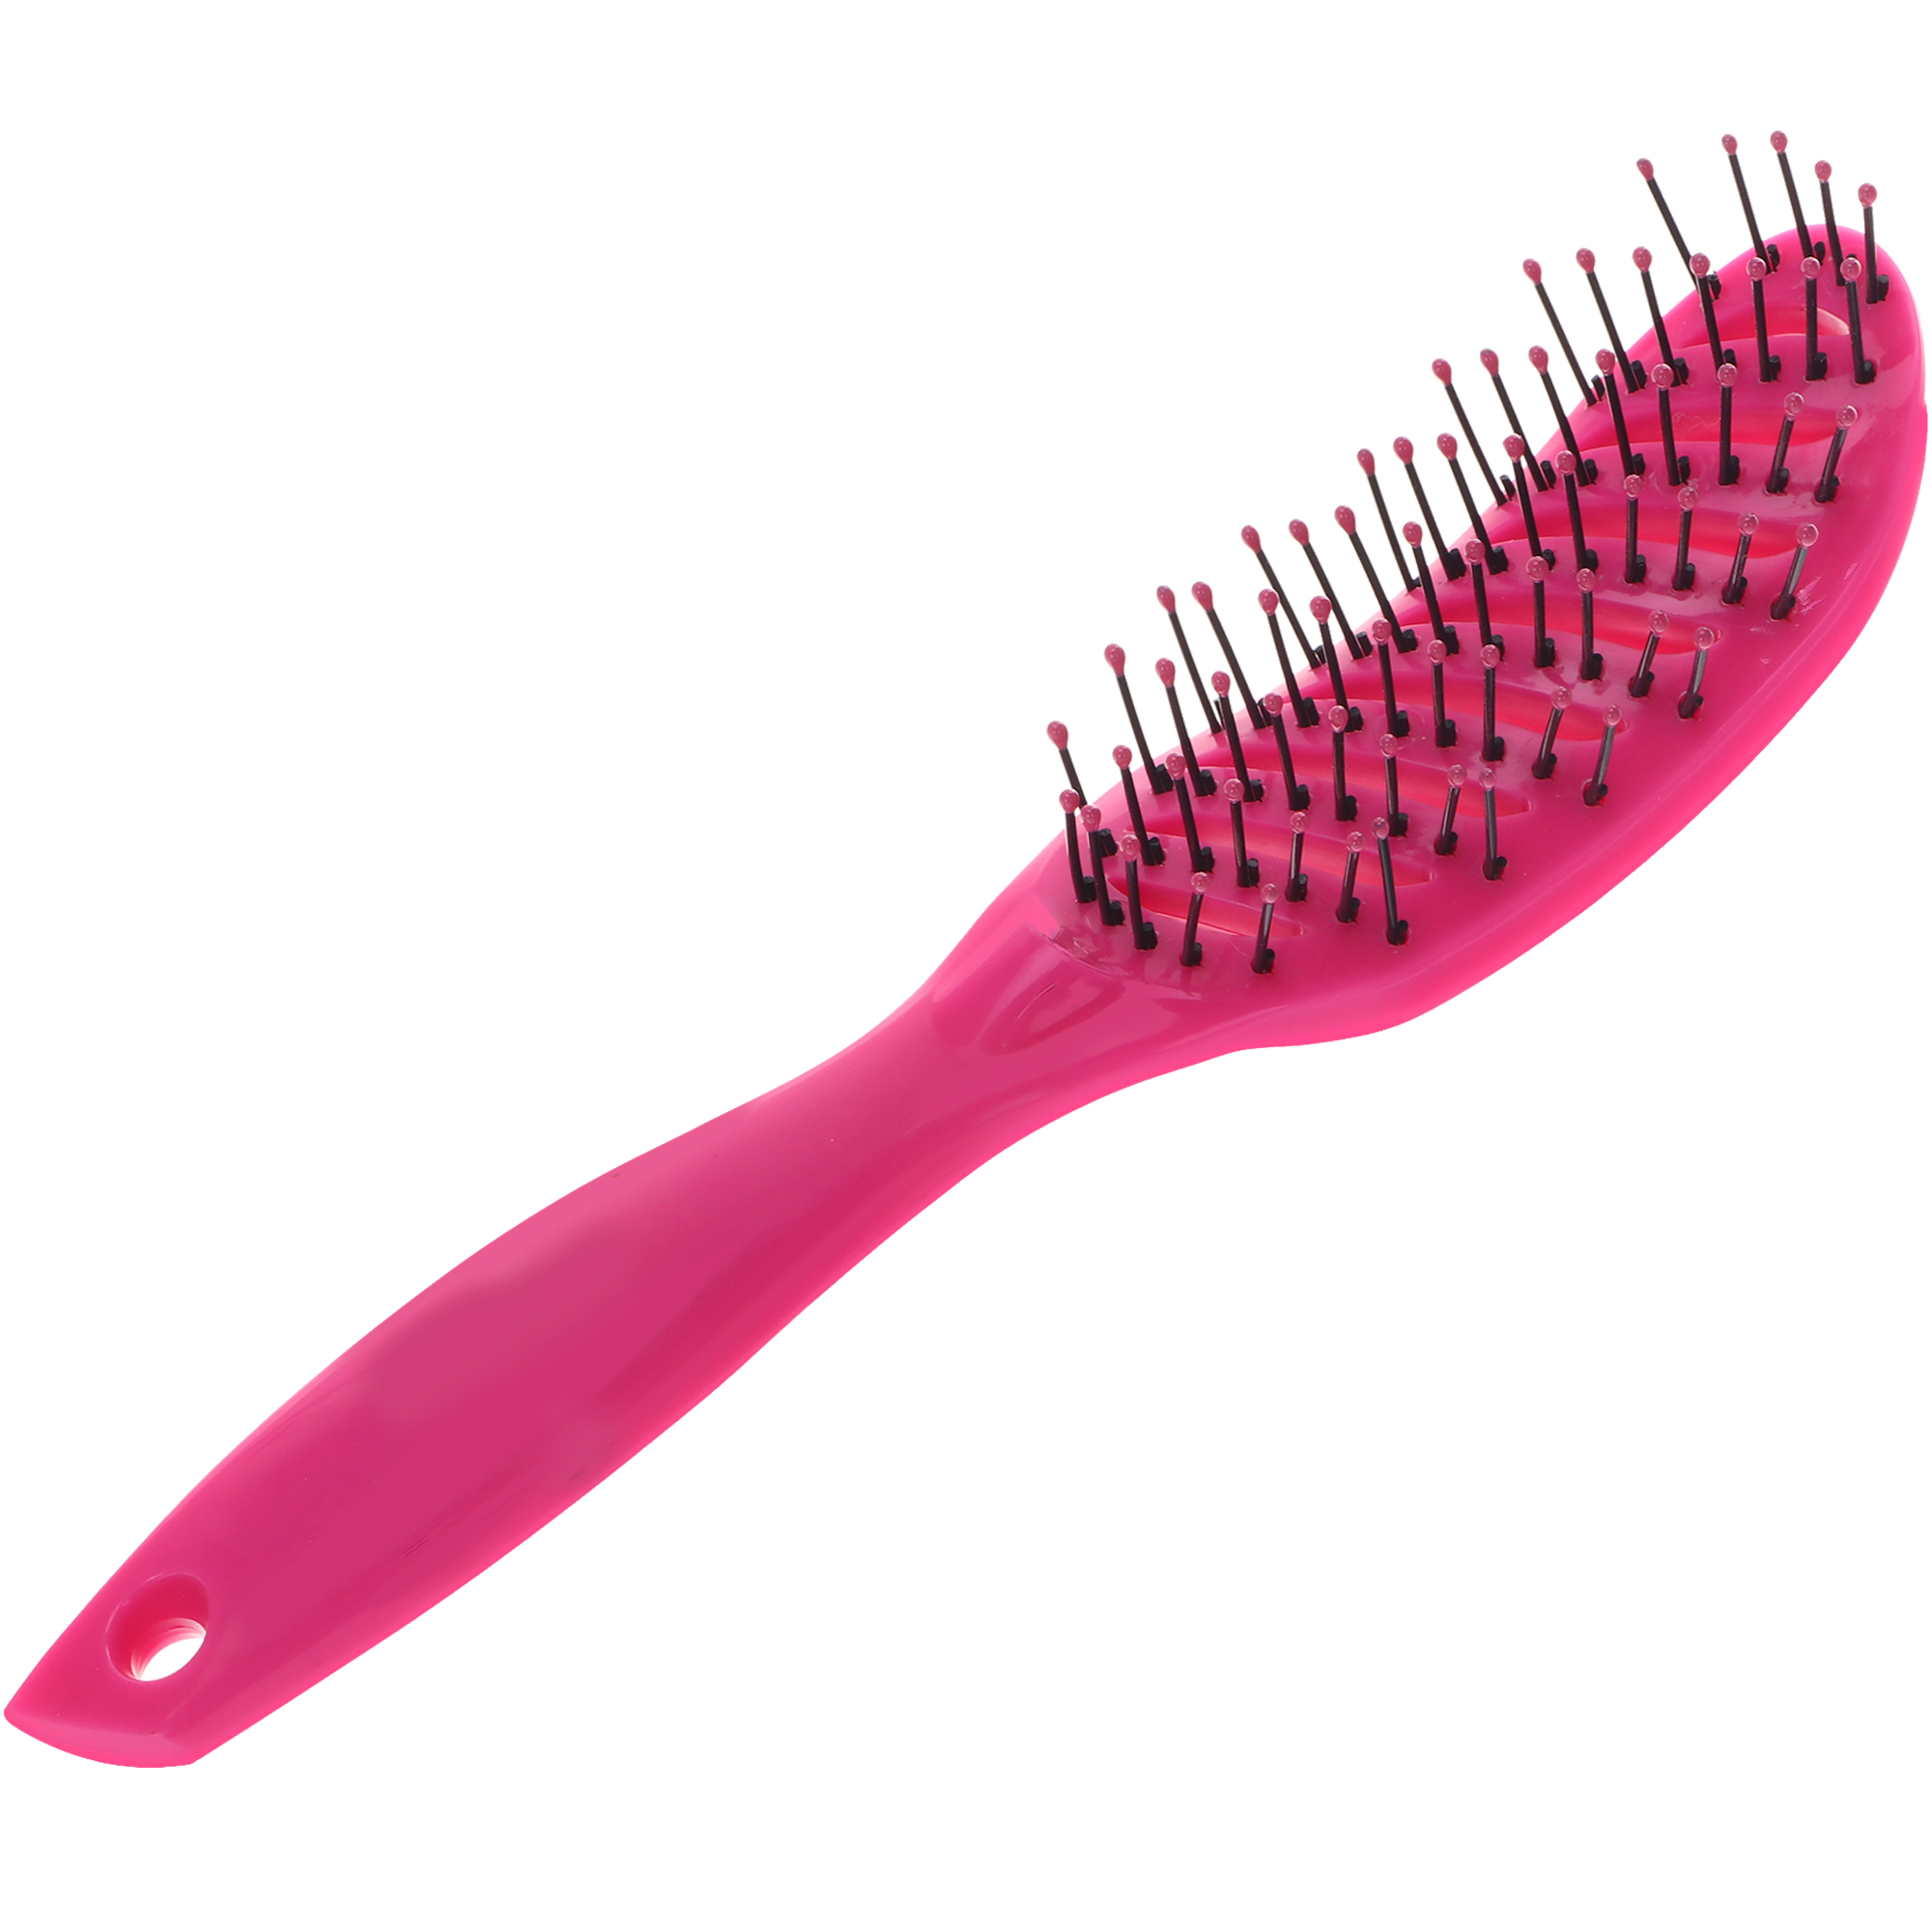 Расческа Nice View каркасная для укладки волос с пластиковыми зубьями L-23 розовая расческа гребешок с длинными зубьями 8 х 5 5 см синяя